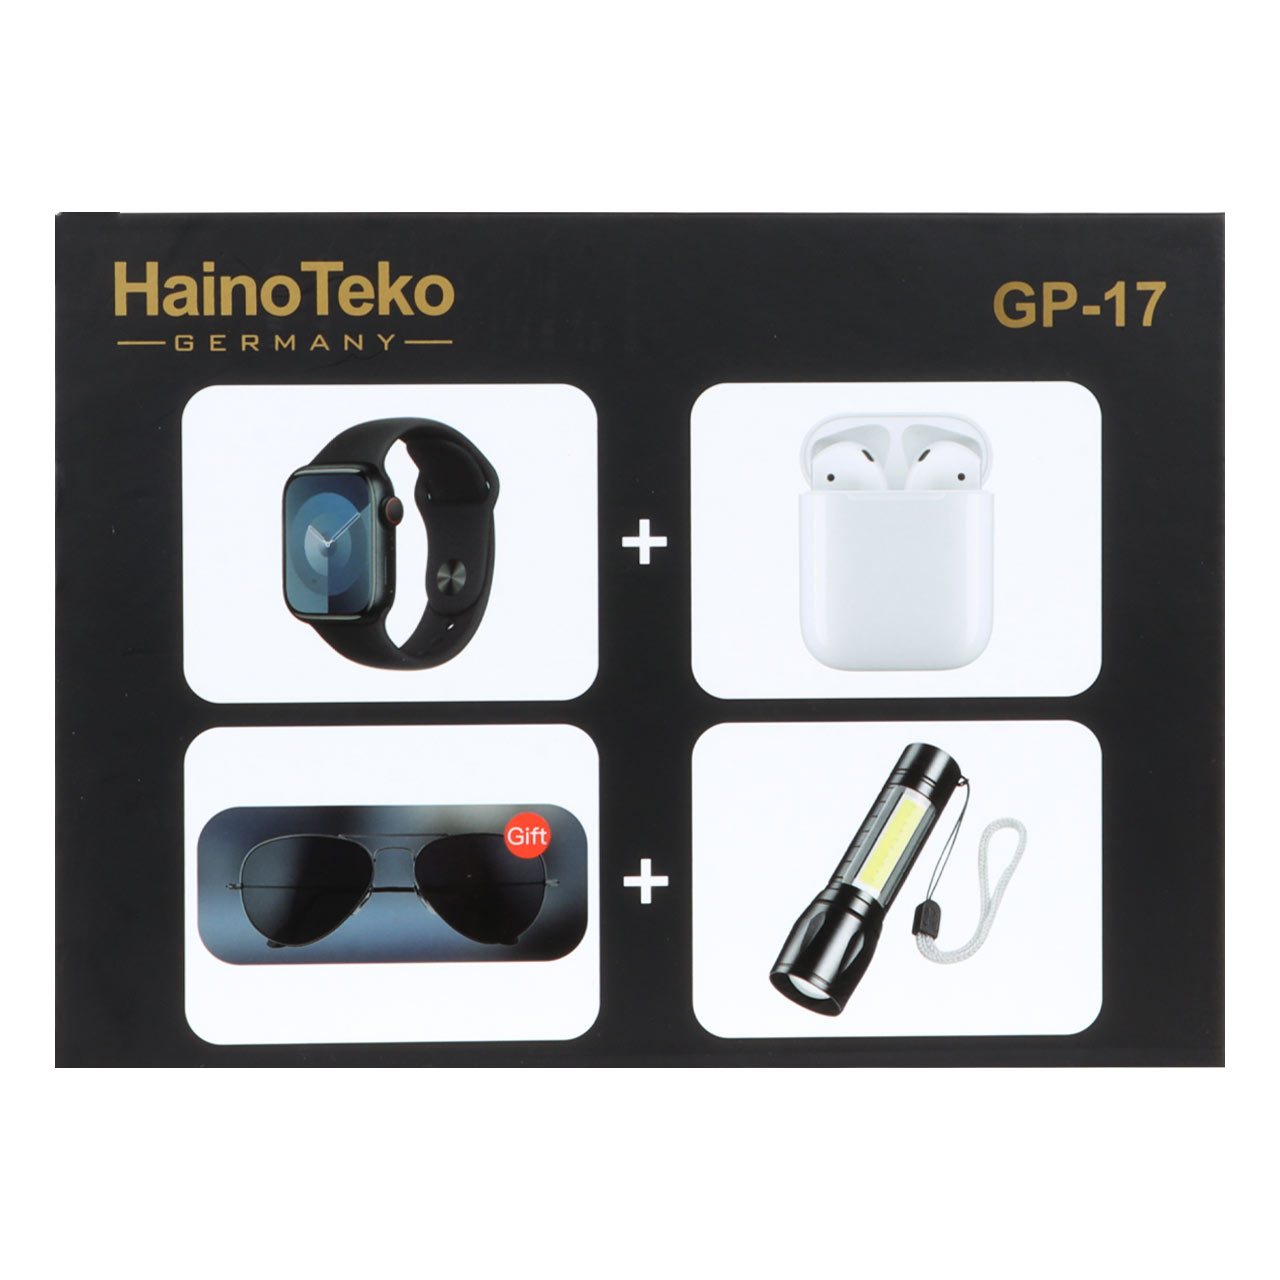 ساعت هوشمند Haino Teko مدل GP-17 به همراه ایرپاد و عینک - مشکی